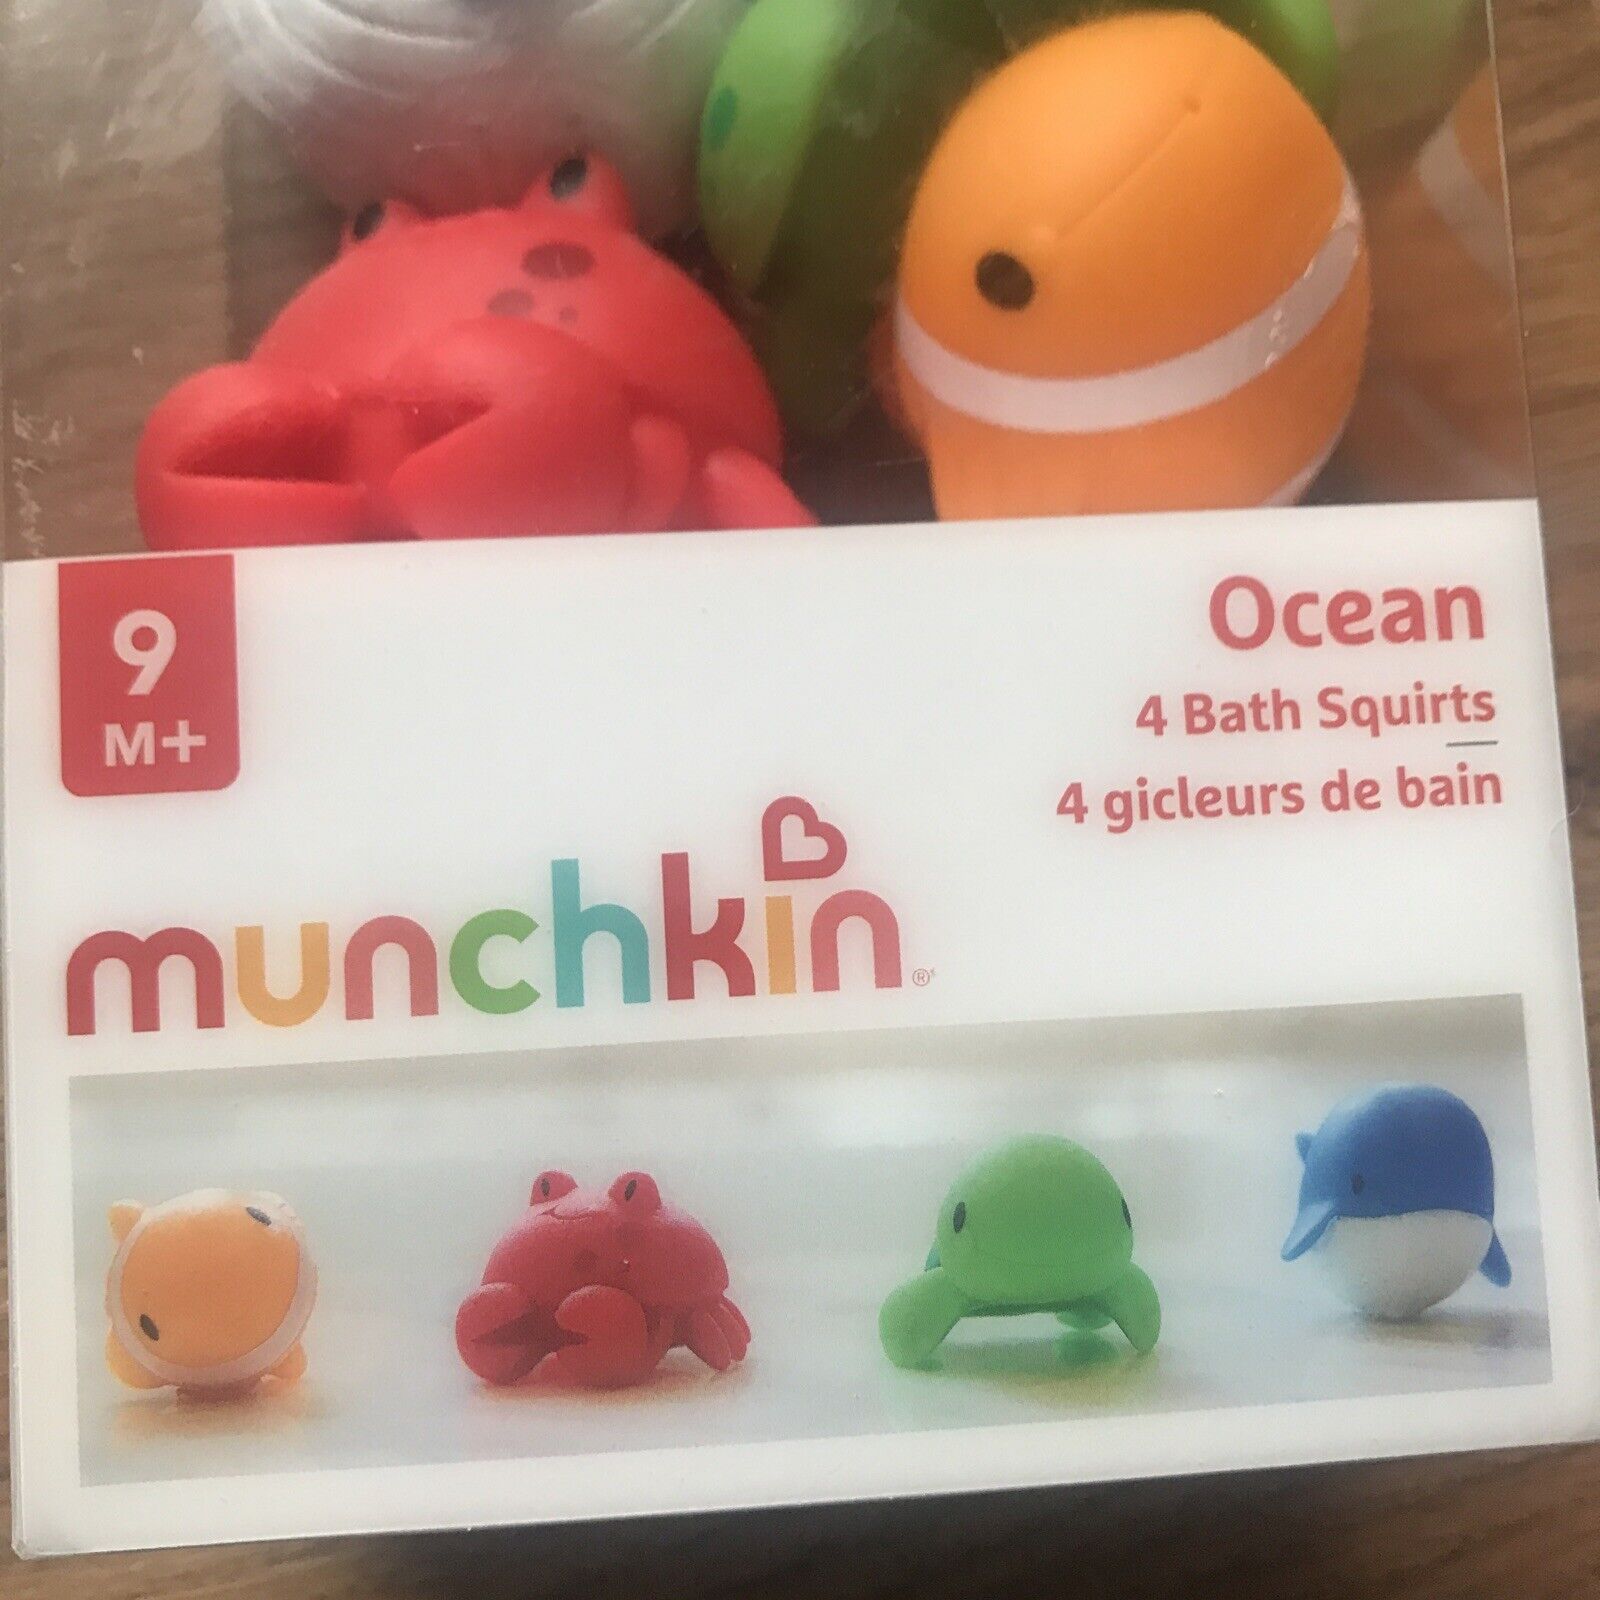 Munchkin Ocean Bath Squirts - 4 bath squirts